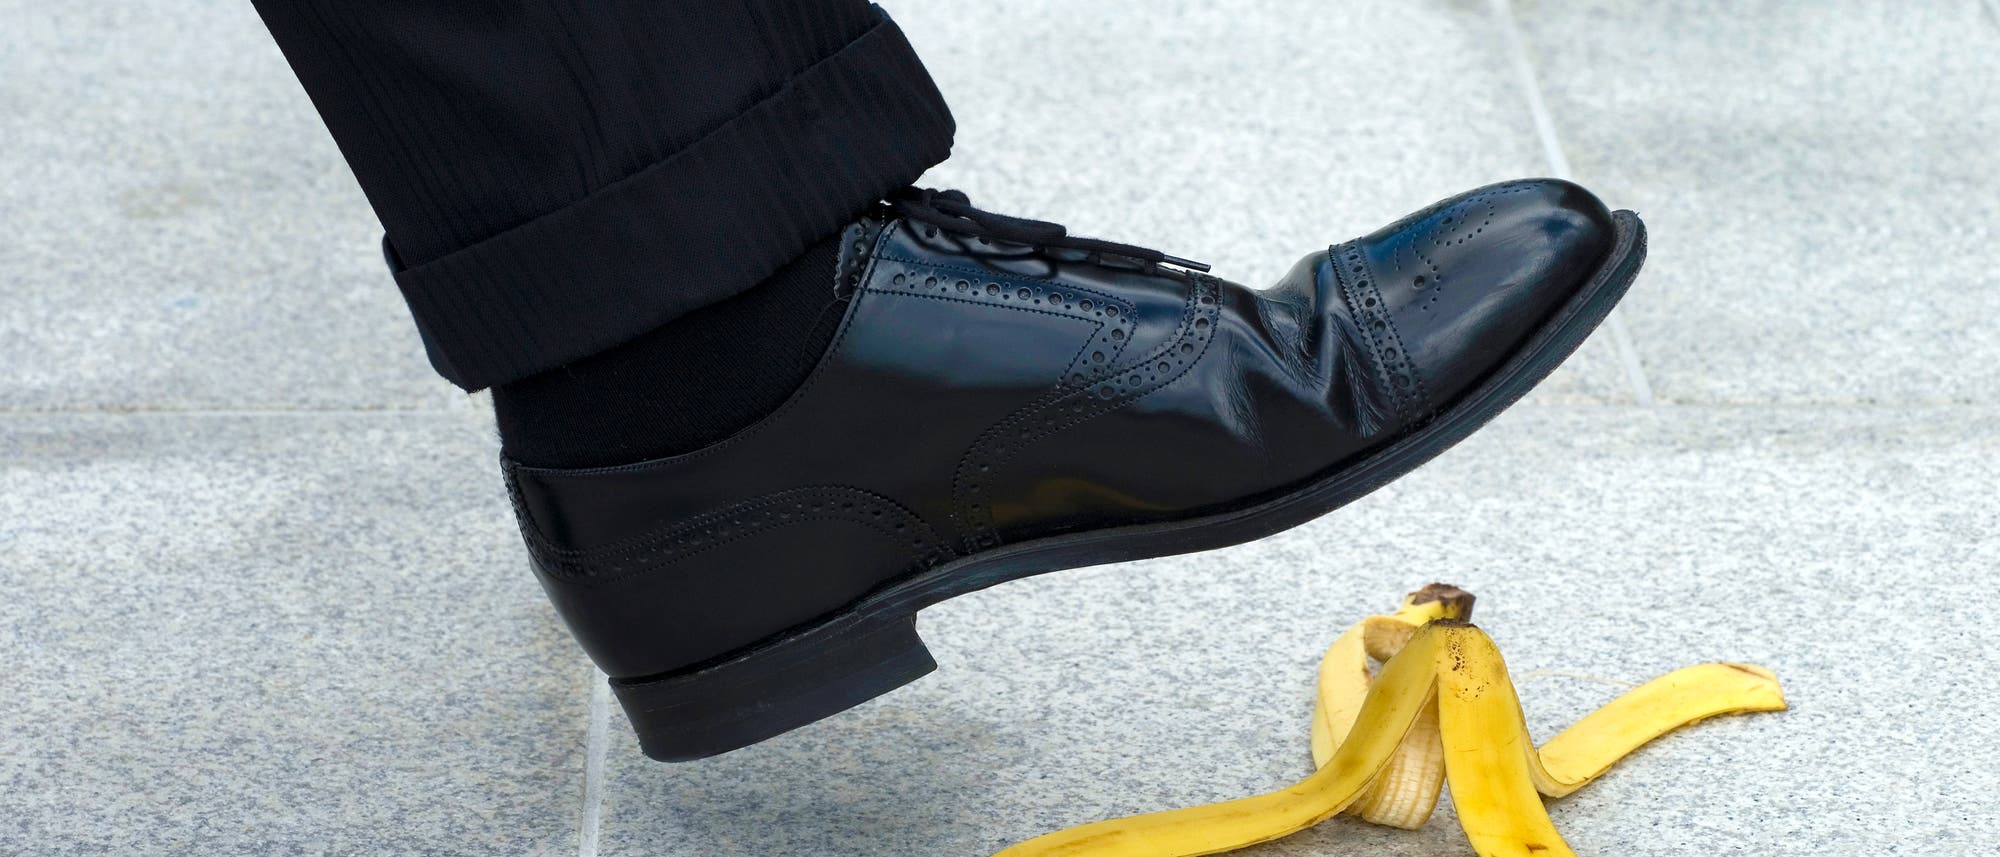 Der Fuß eines Mannes, der im Begriff ist, auf einen Bananenschale zu treten.